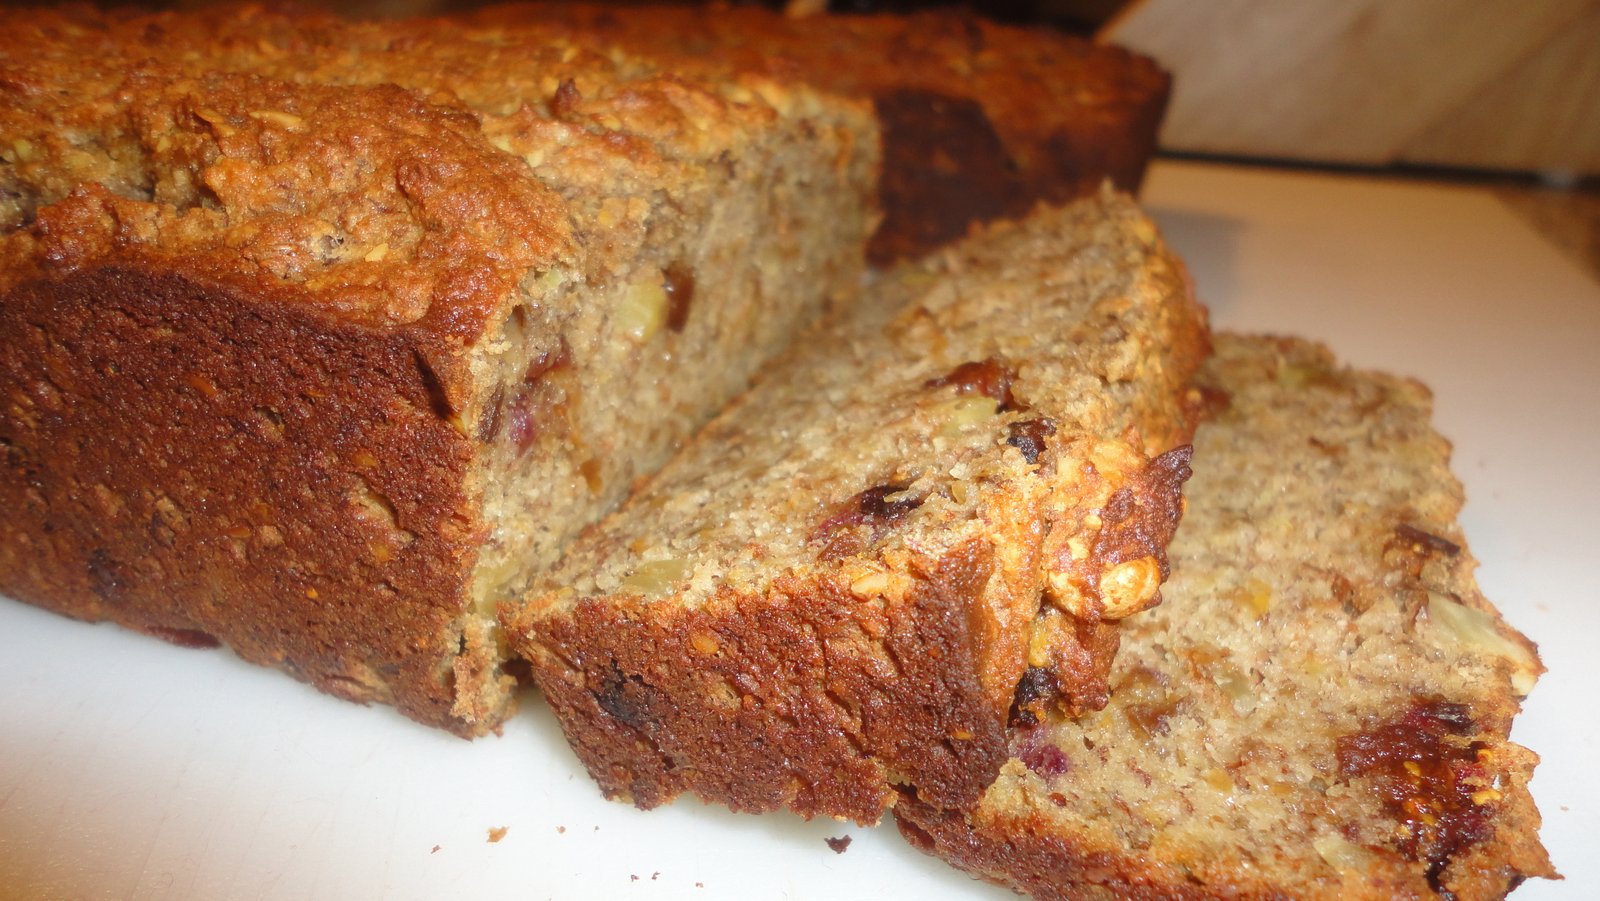 Recipe #7 | The Amazing Banana Wanut Bread (Paleo… Of Course!)